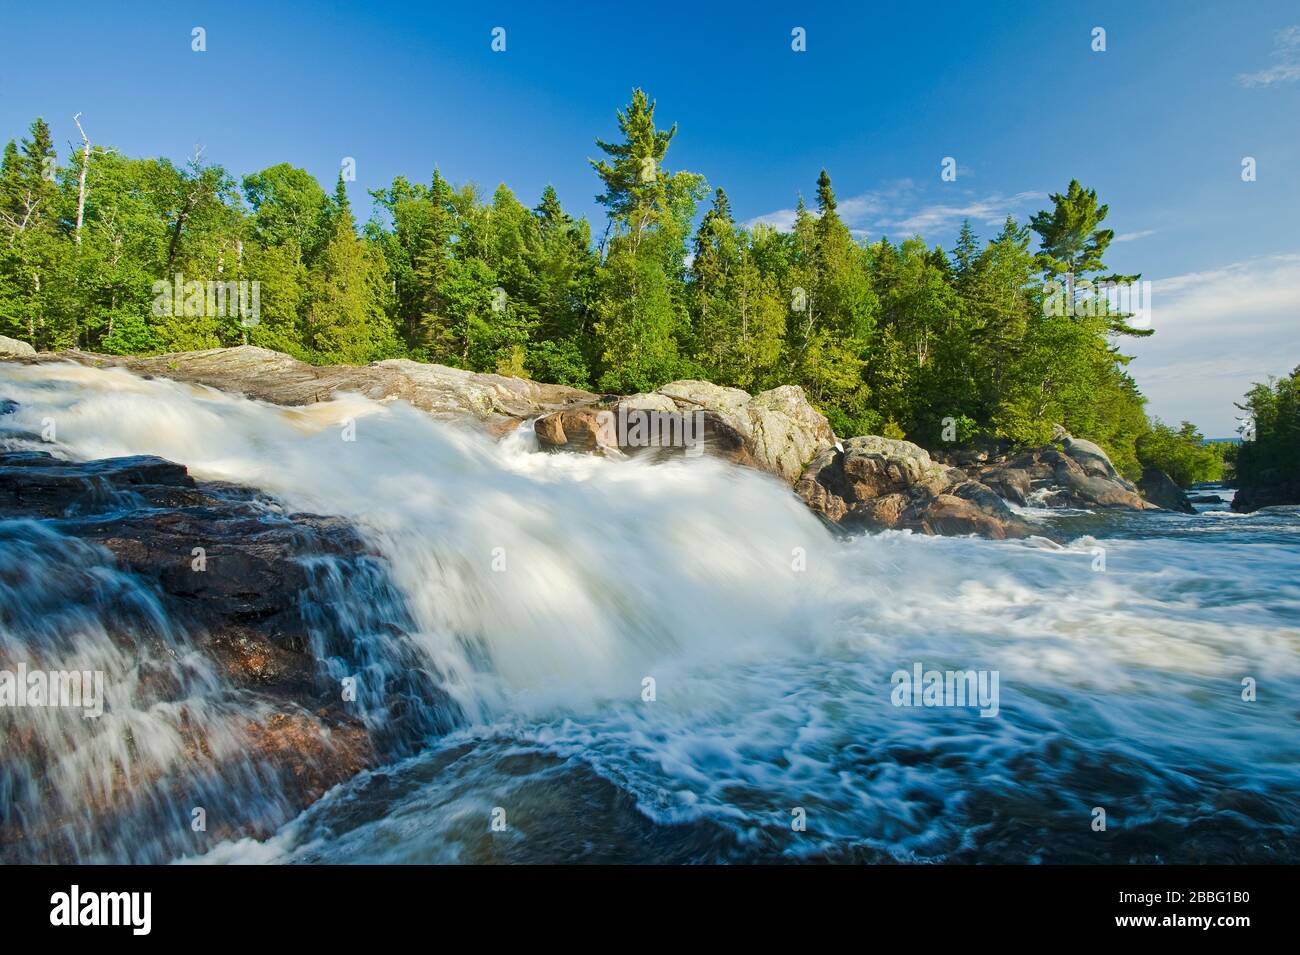 Chutes d'eau, rivière Sand, parc provincial du lac supérieur, Ontario, Canada Banque D'Images